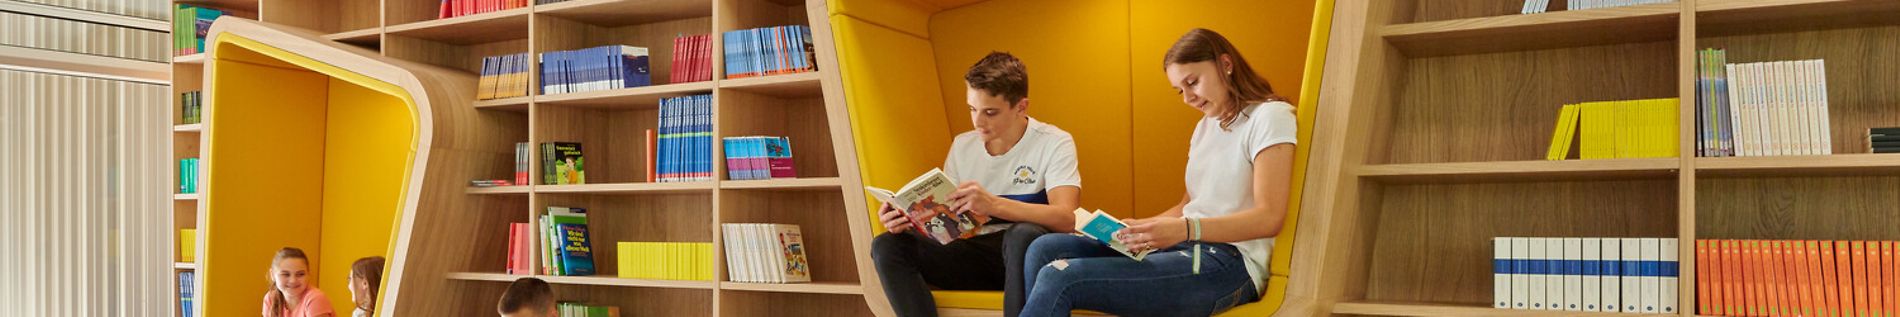 Bibliothek der Stadtteilschule Lurup, Holzbänke und gepolsterte Sitze, Schülerinnen und Schüler lesen und unterhalten sich.